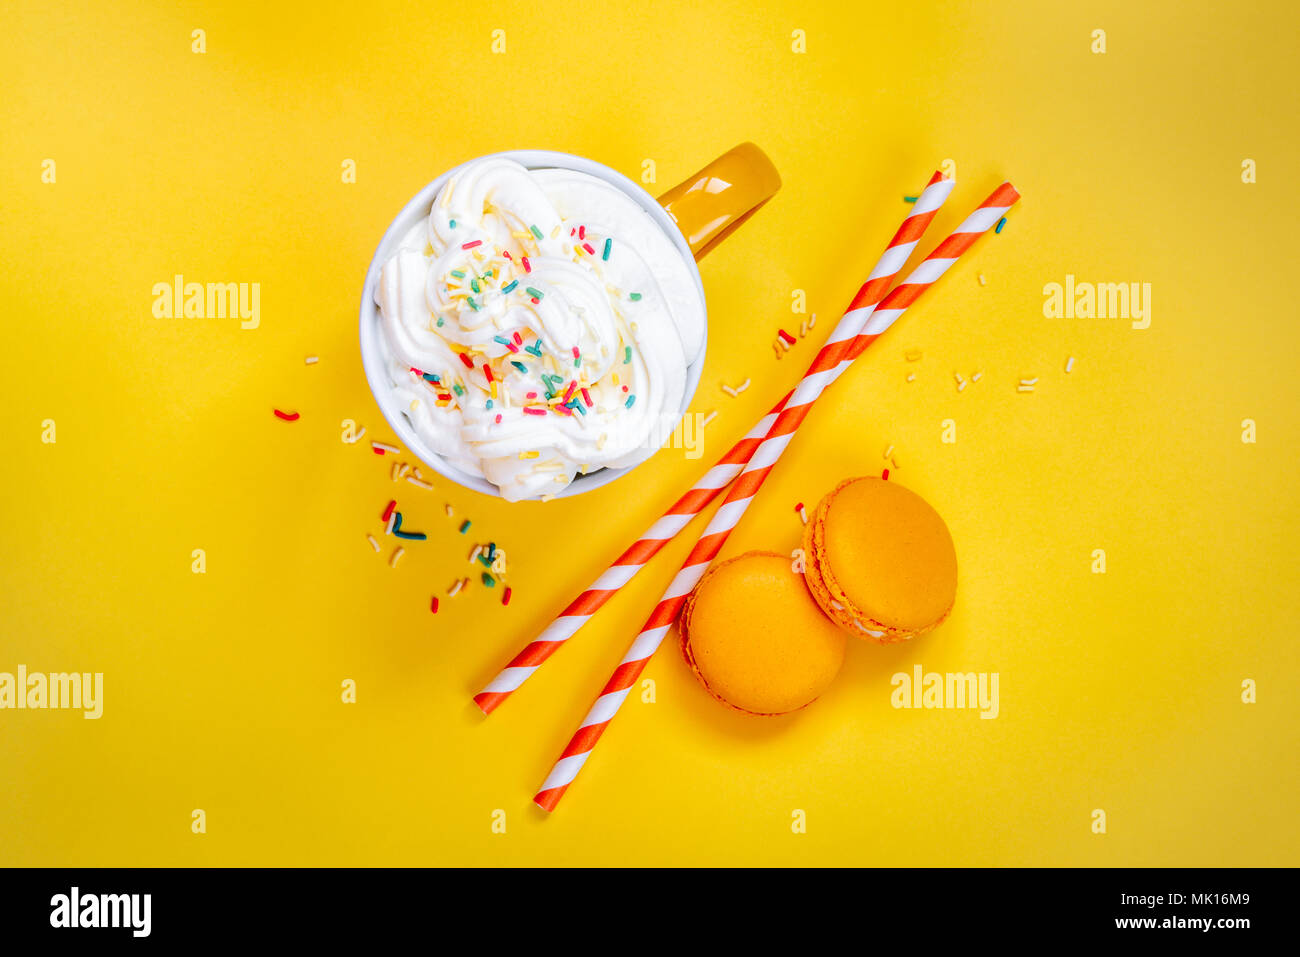 Vue de dessus de la tasse de café jaune, les pailles et les macarons français sur fond jaune. Banque D'Images